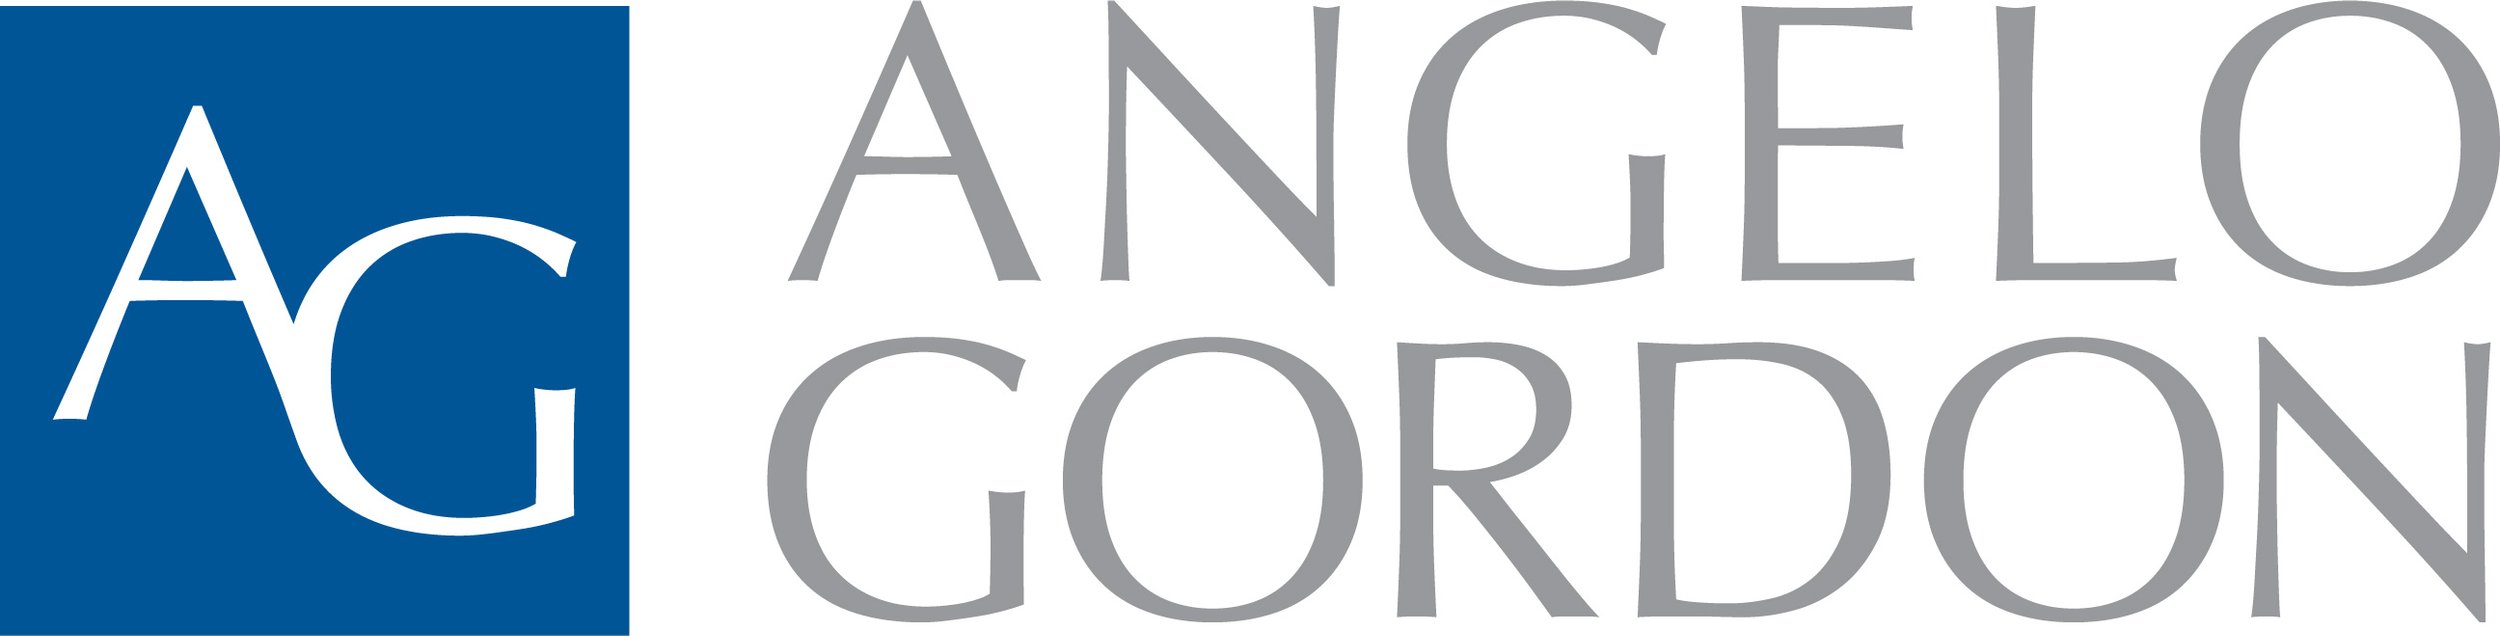 Angelo_Gordon_Logo.jpg